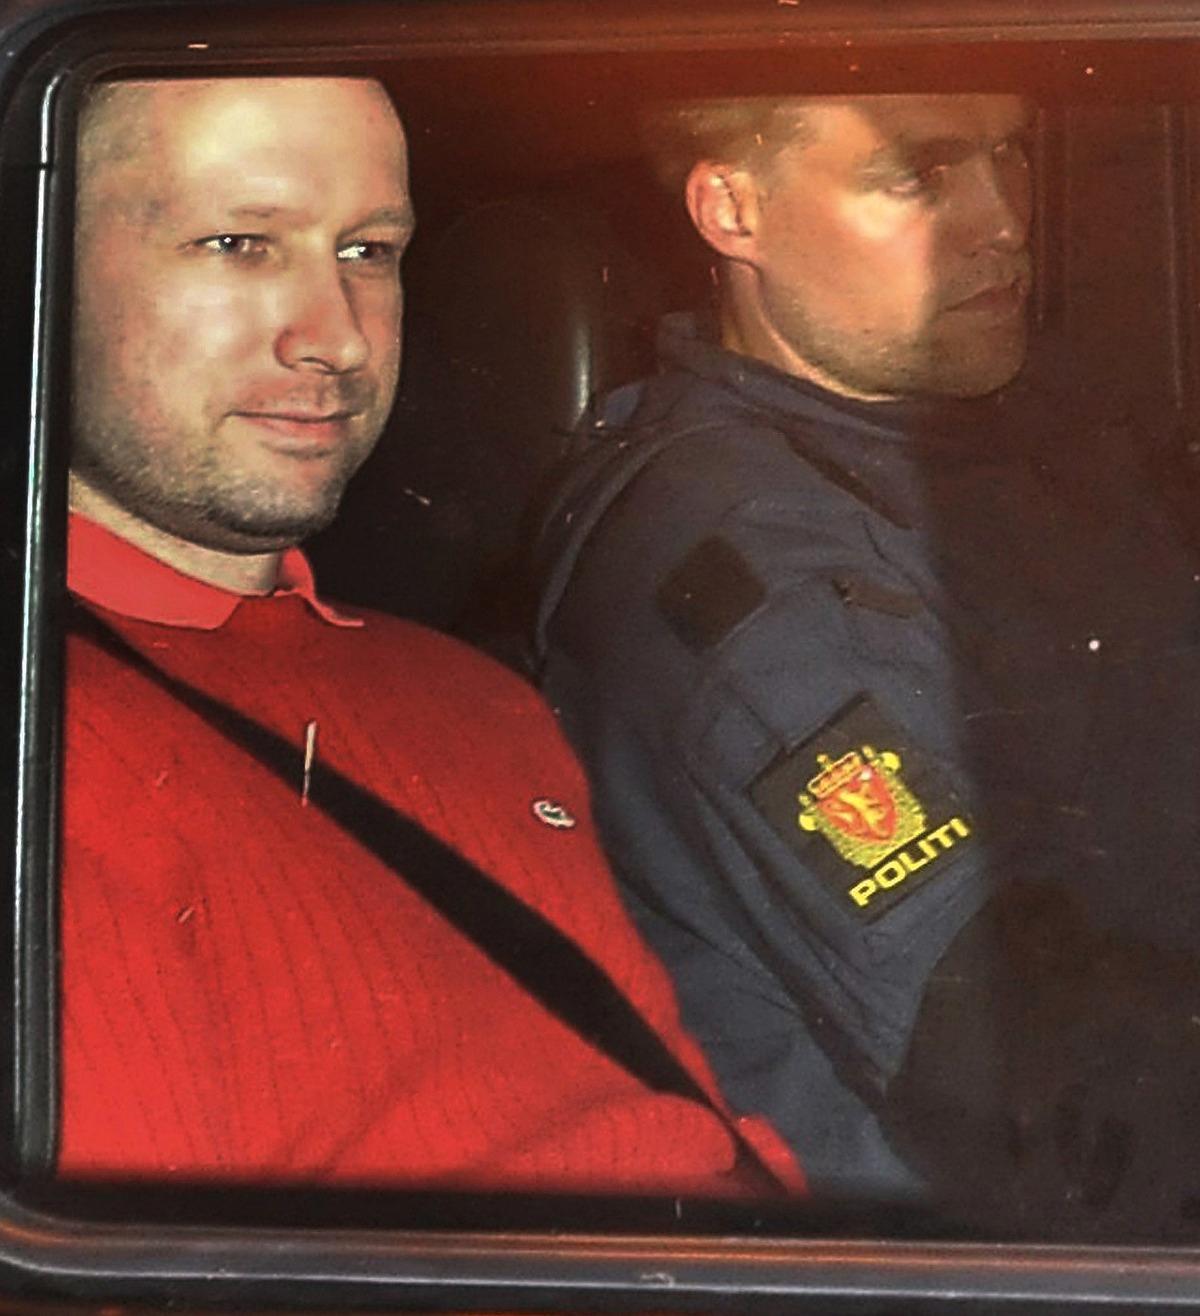 LÅGMÄLD SJÄLVSÄKERHET När Anders Behring Breivik fördes in till häktningsförhandlingen vände han sig mot åhörarna i salen och log. Samma trygga ansikte och lågmälda självsäkerhet som han visat upp tidigare, som här när han fördes till häktet i Oslo den 25 juli.